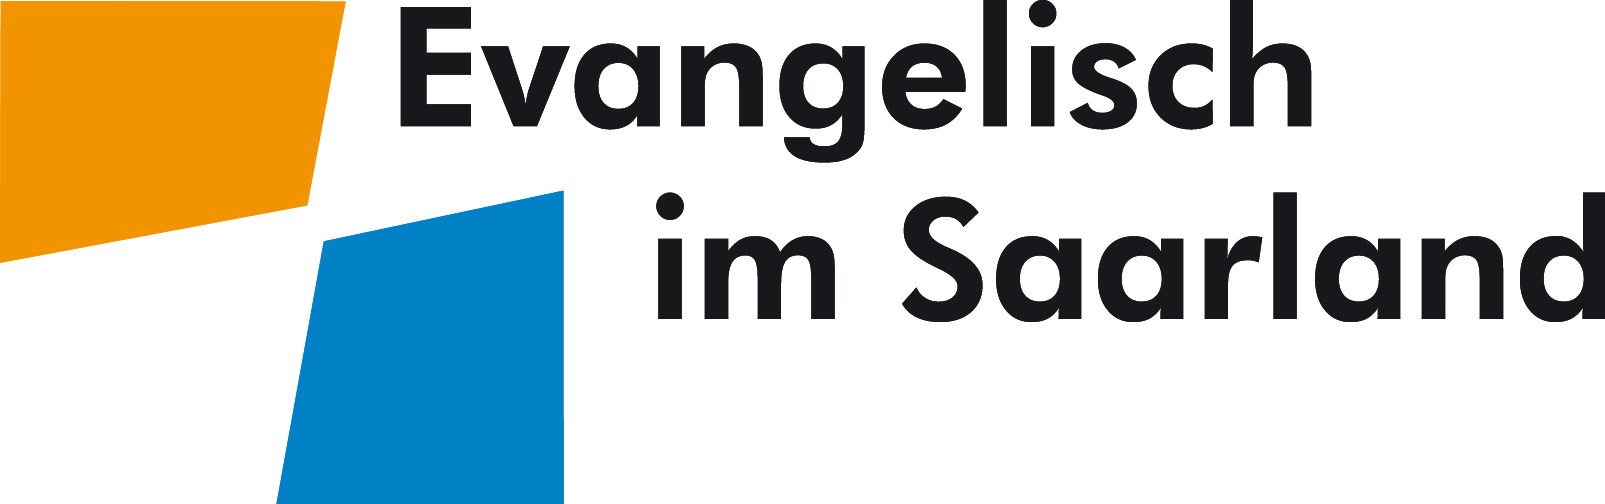 Verband evangelischer Kindertageseinrichtungen im Saarland